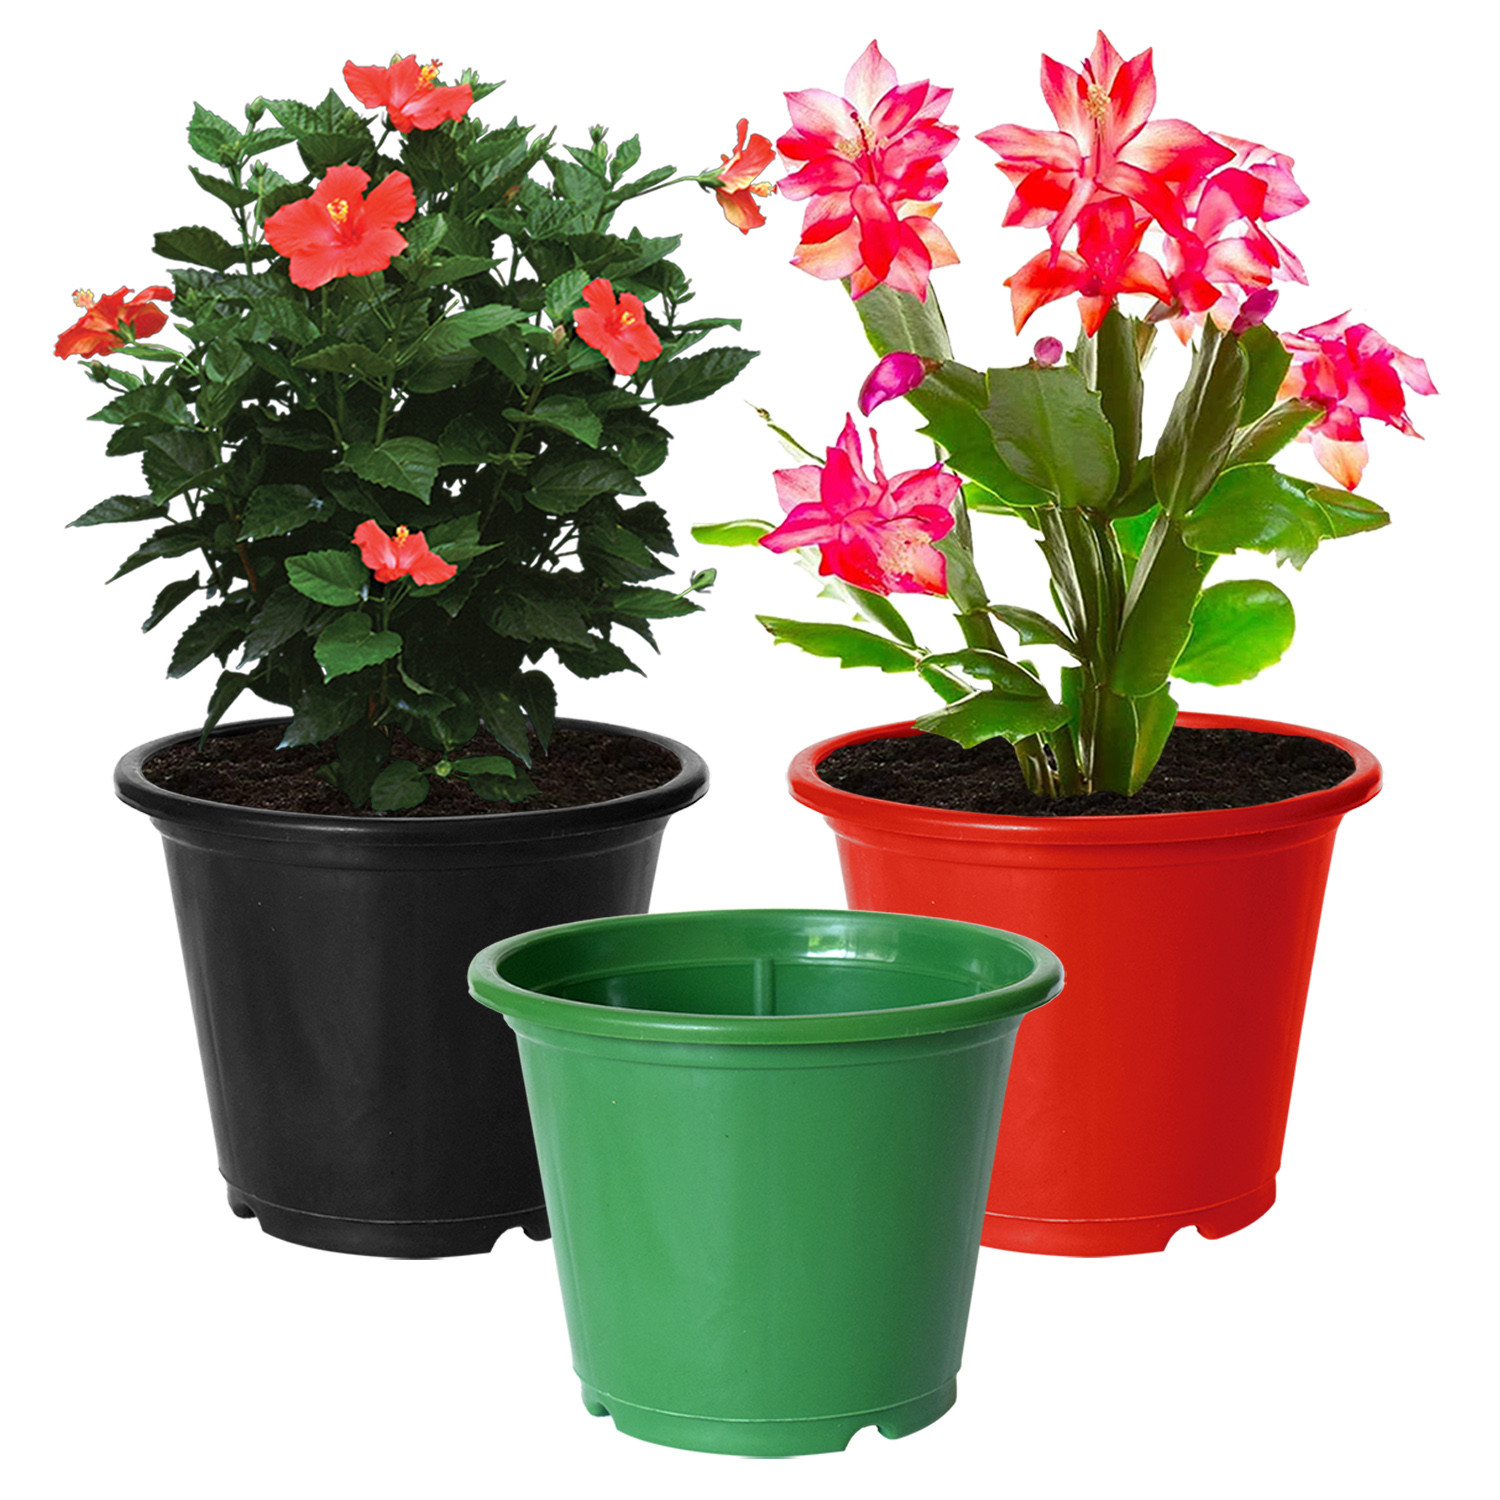 Kuber Industries Durable Plastic Flower Pot|Gamla for Indoor Home Decor & Outdoor Balcony,Garden,6